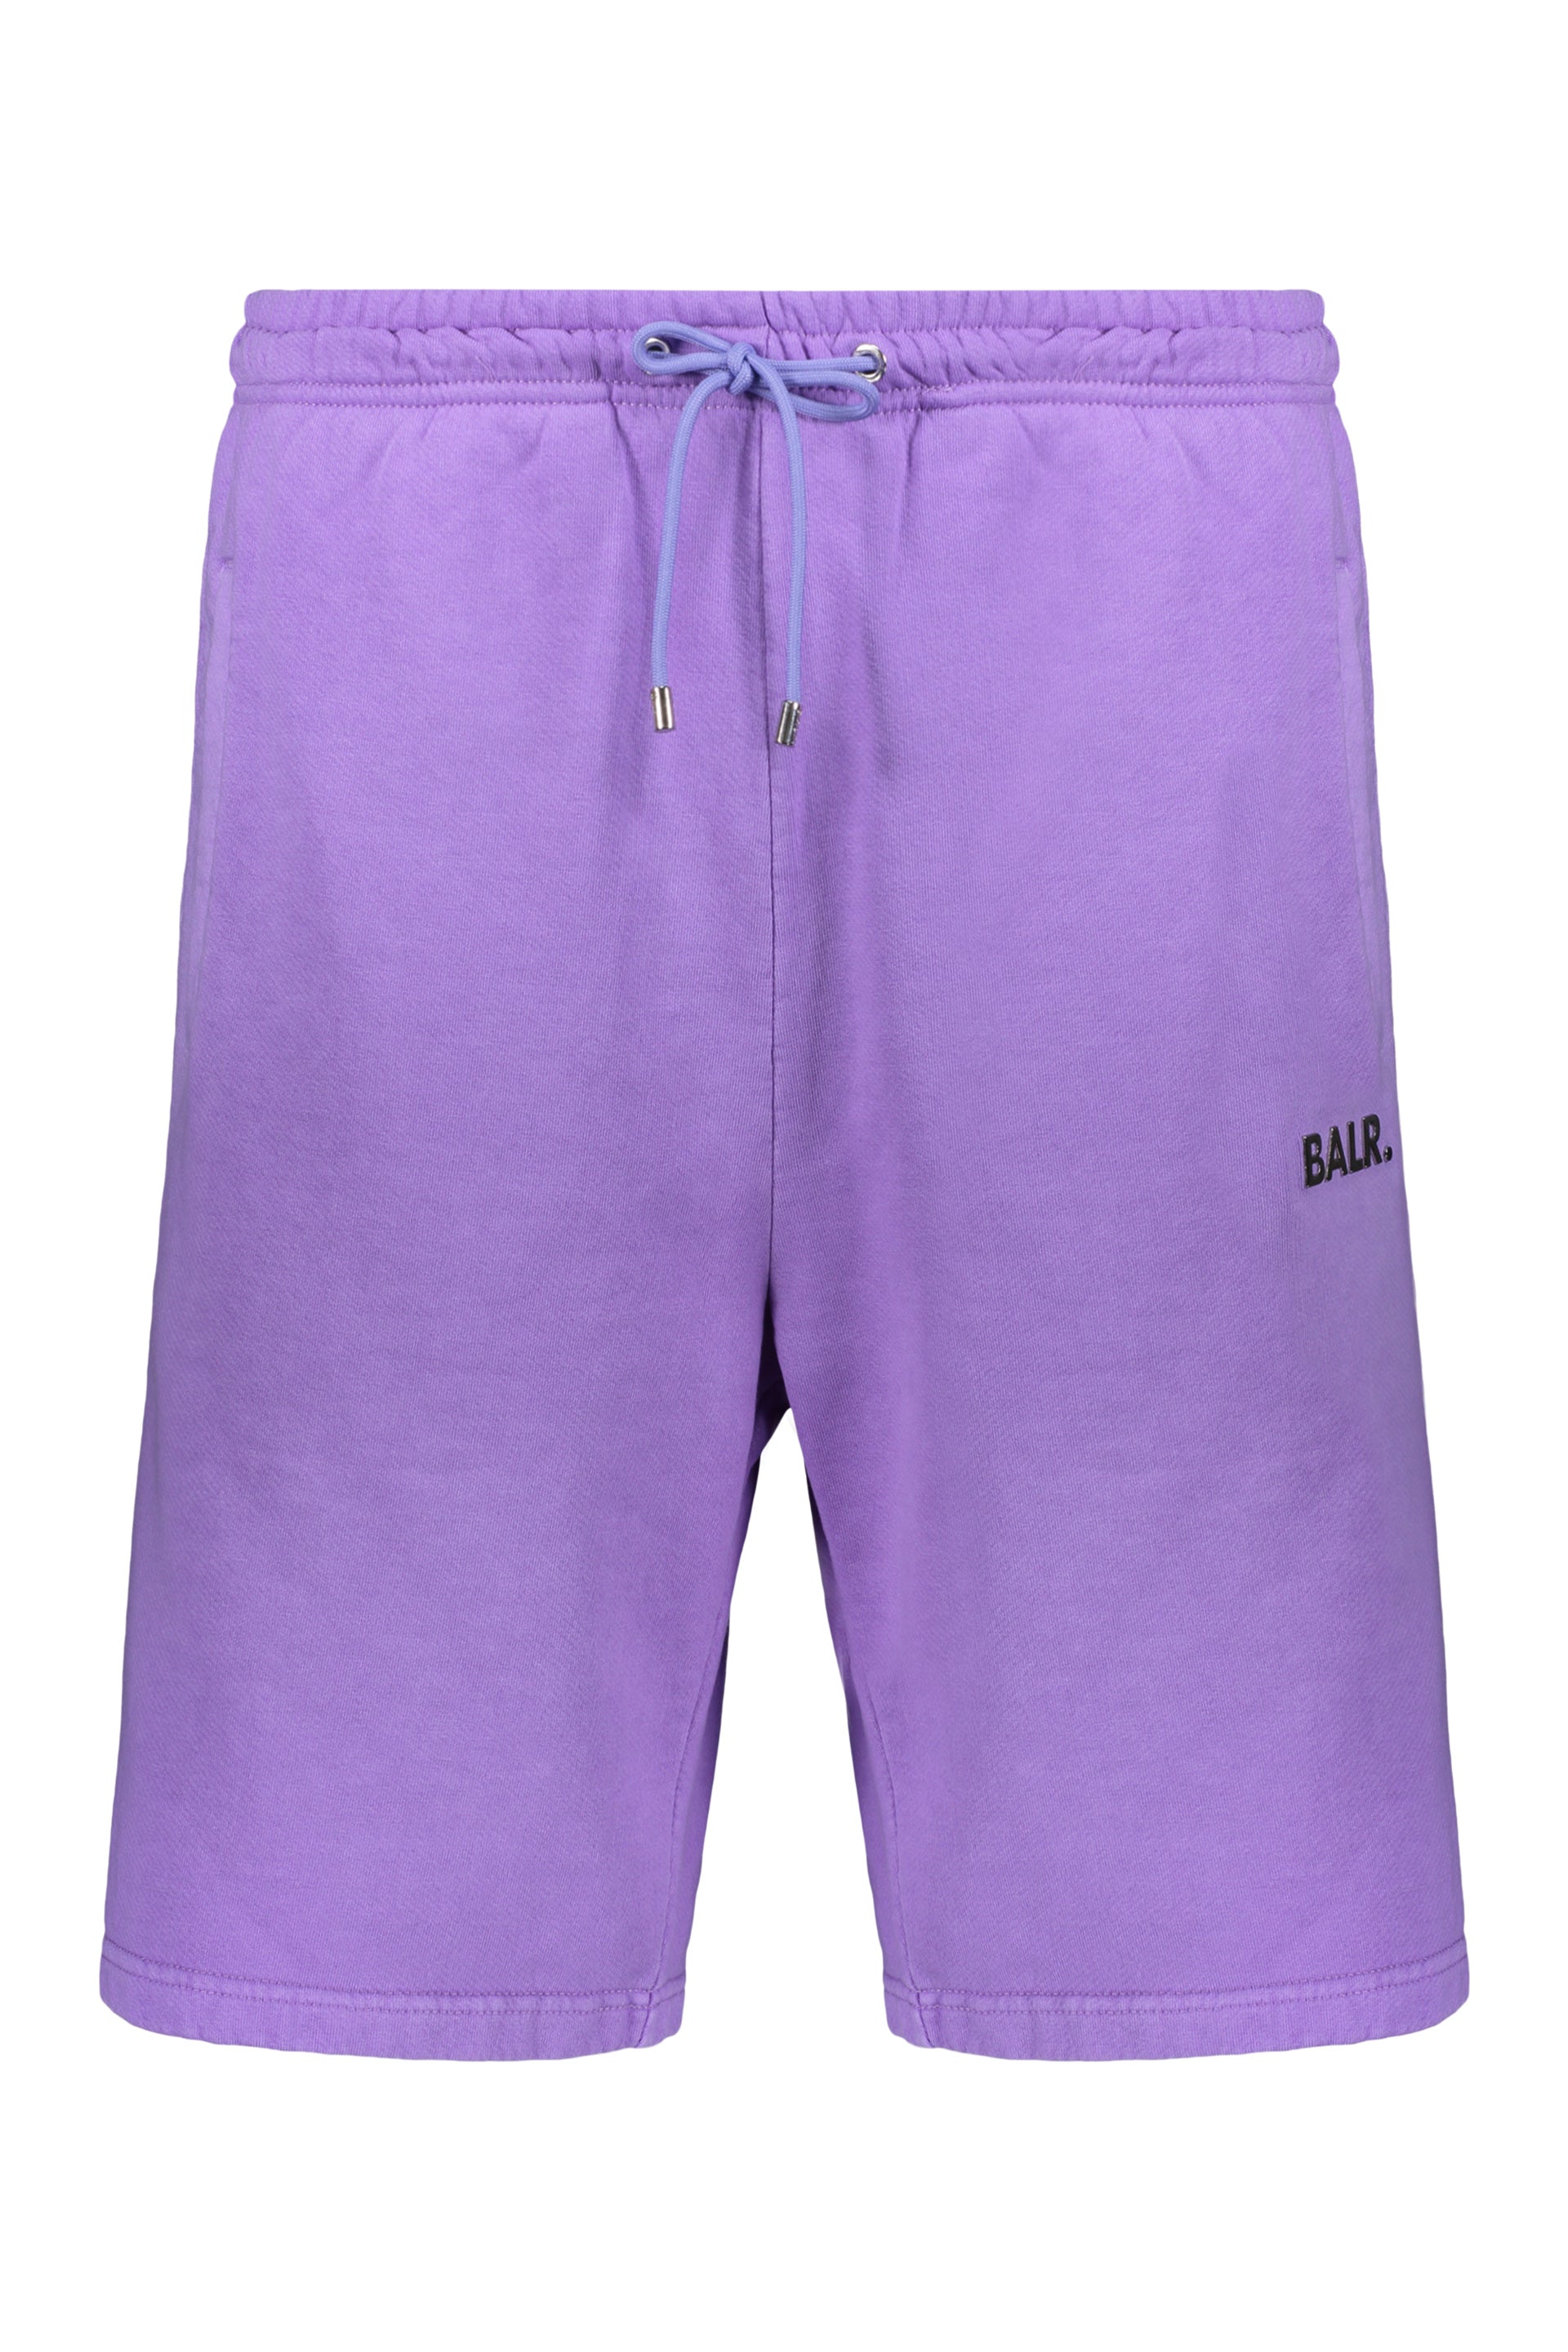 BALR_-OUTLET-SALE-Cotton-bermuda-shorts-Hosen-L-ARCHIVE-COLLECTION.jpg